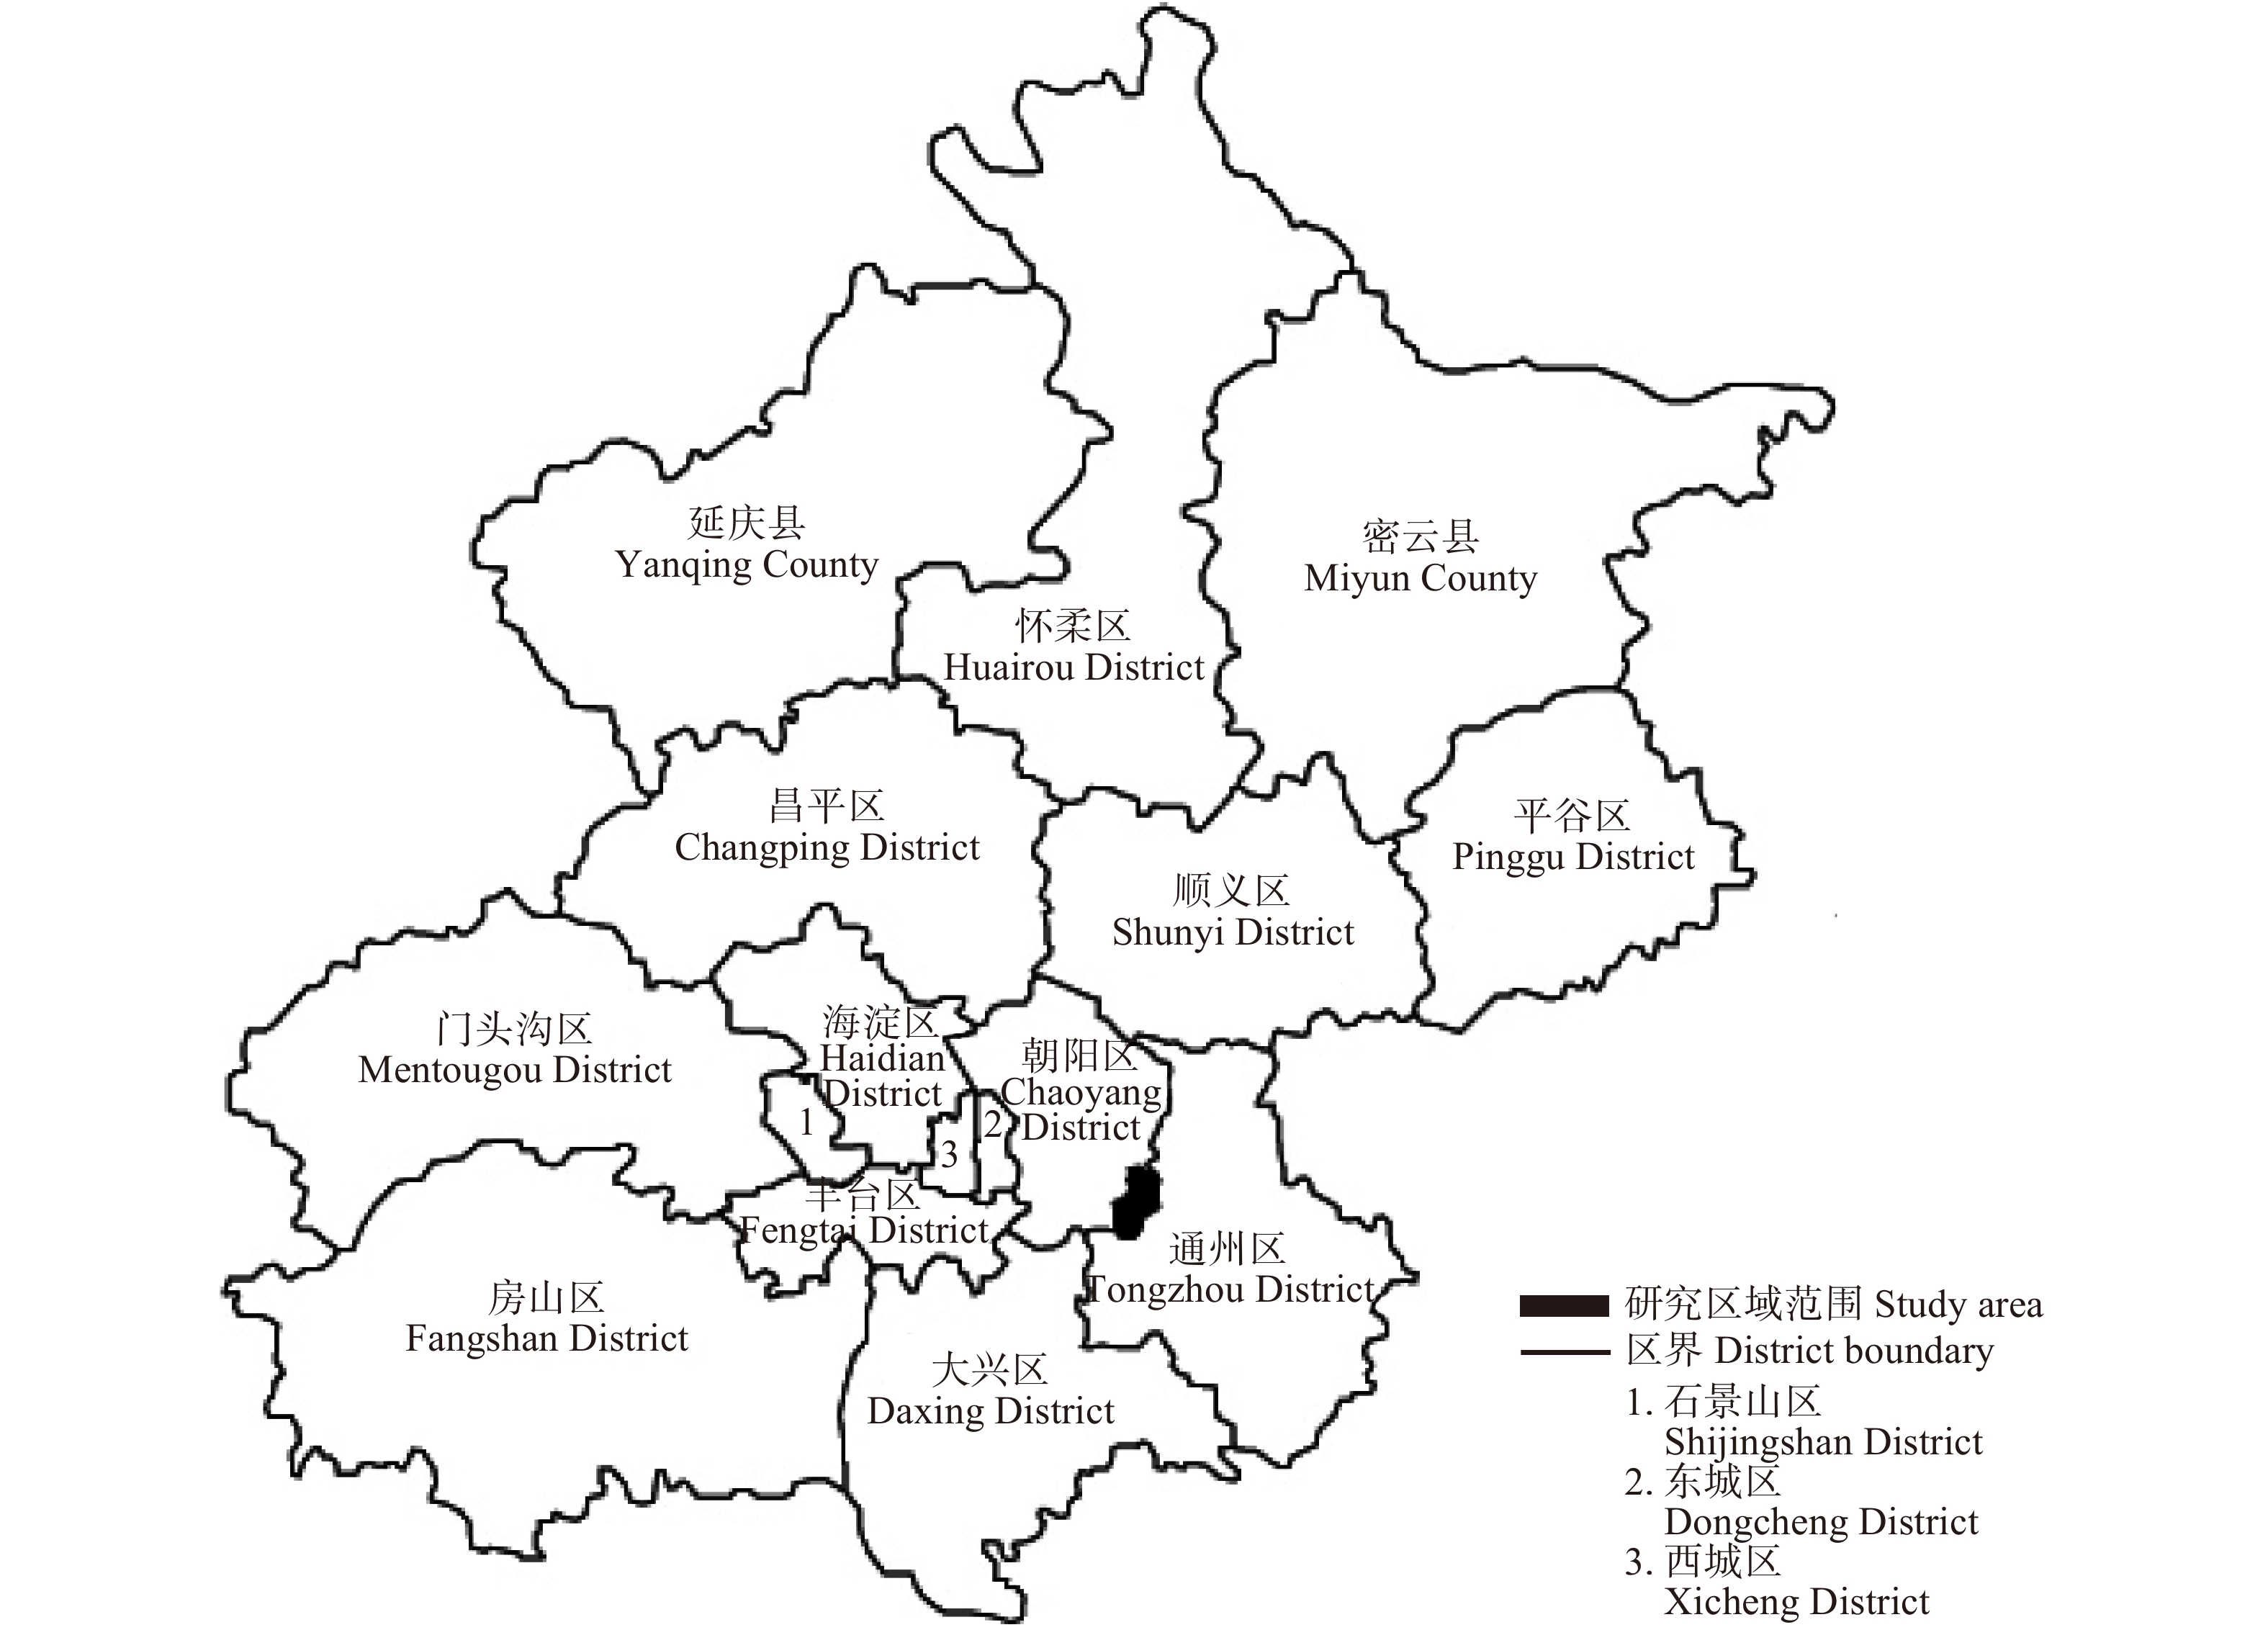 北京市城市边缘区通风廊道型林地营建方法研究—以黑庄户地区